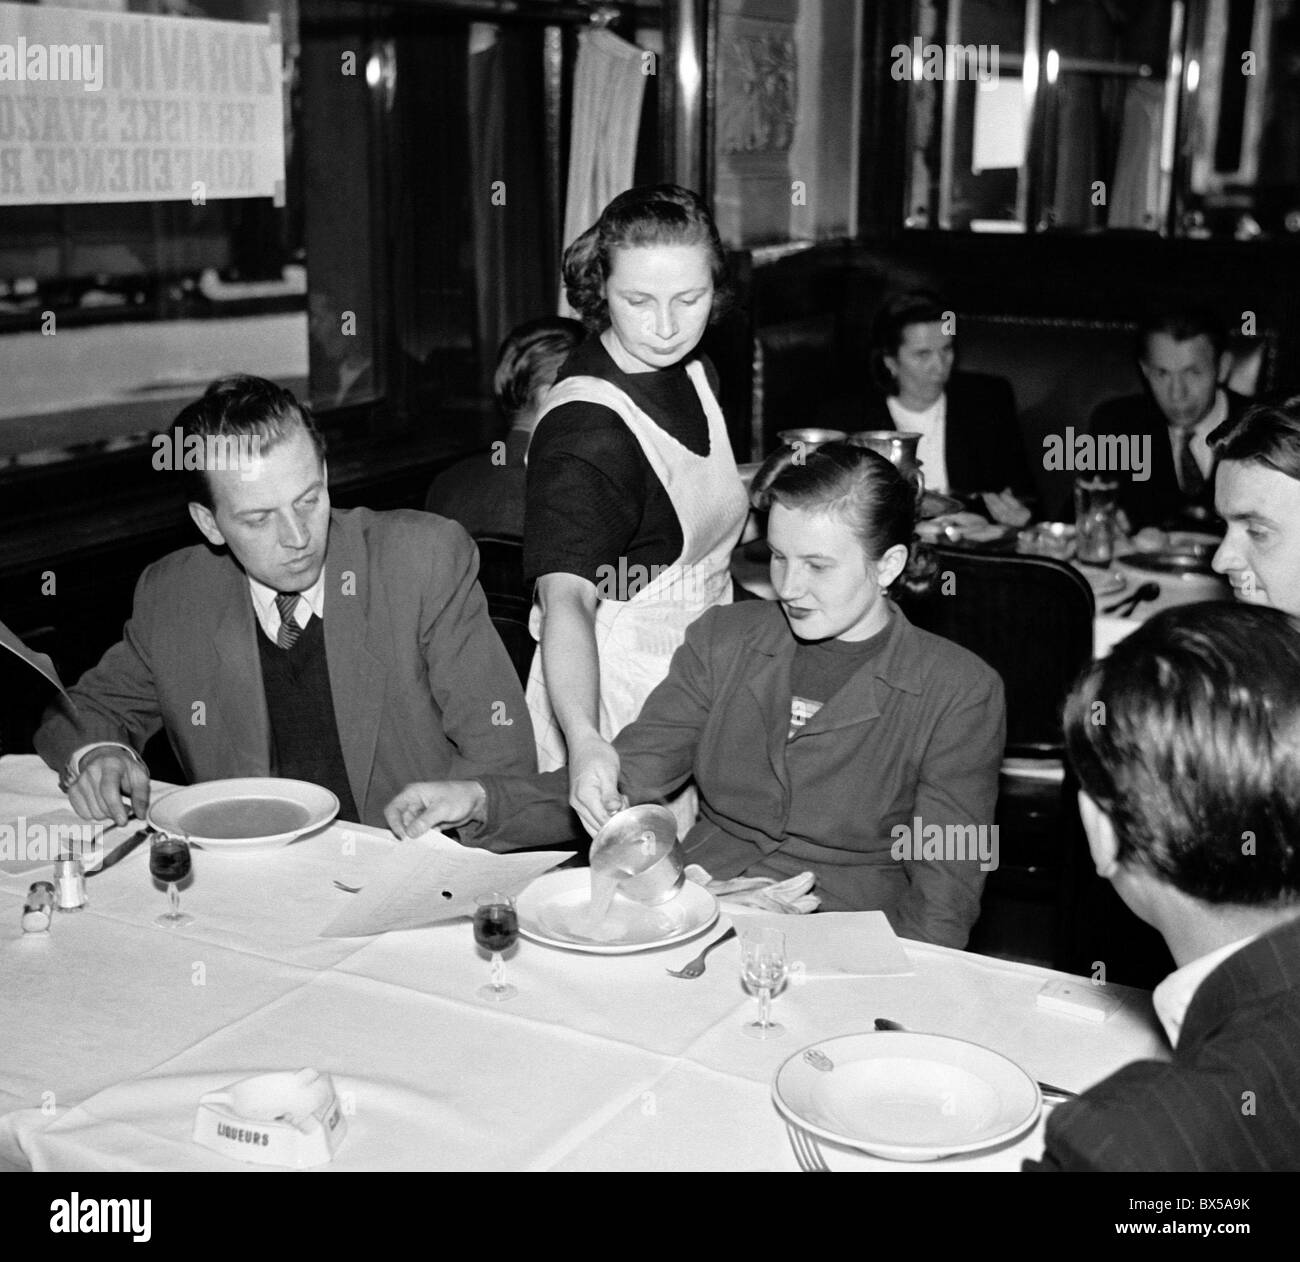 La Tchécoslovaquie - Prague 1949. Serveuse restaurant sert la soupe aux clients. CTK Photo Vintage Banque D'Images